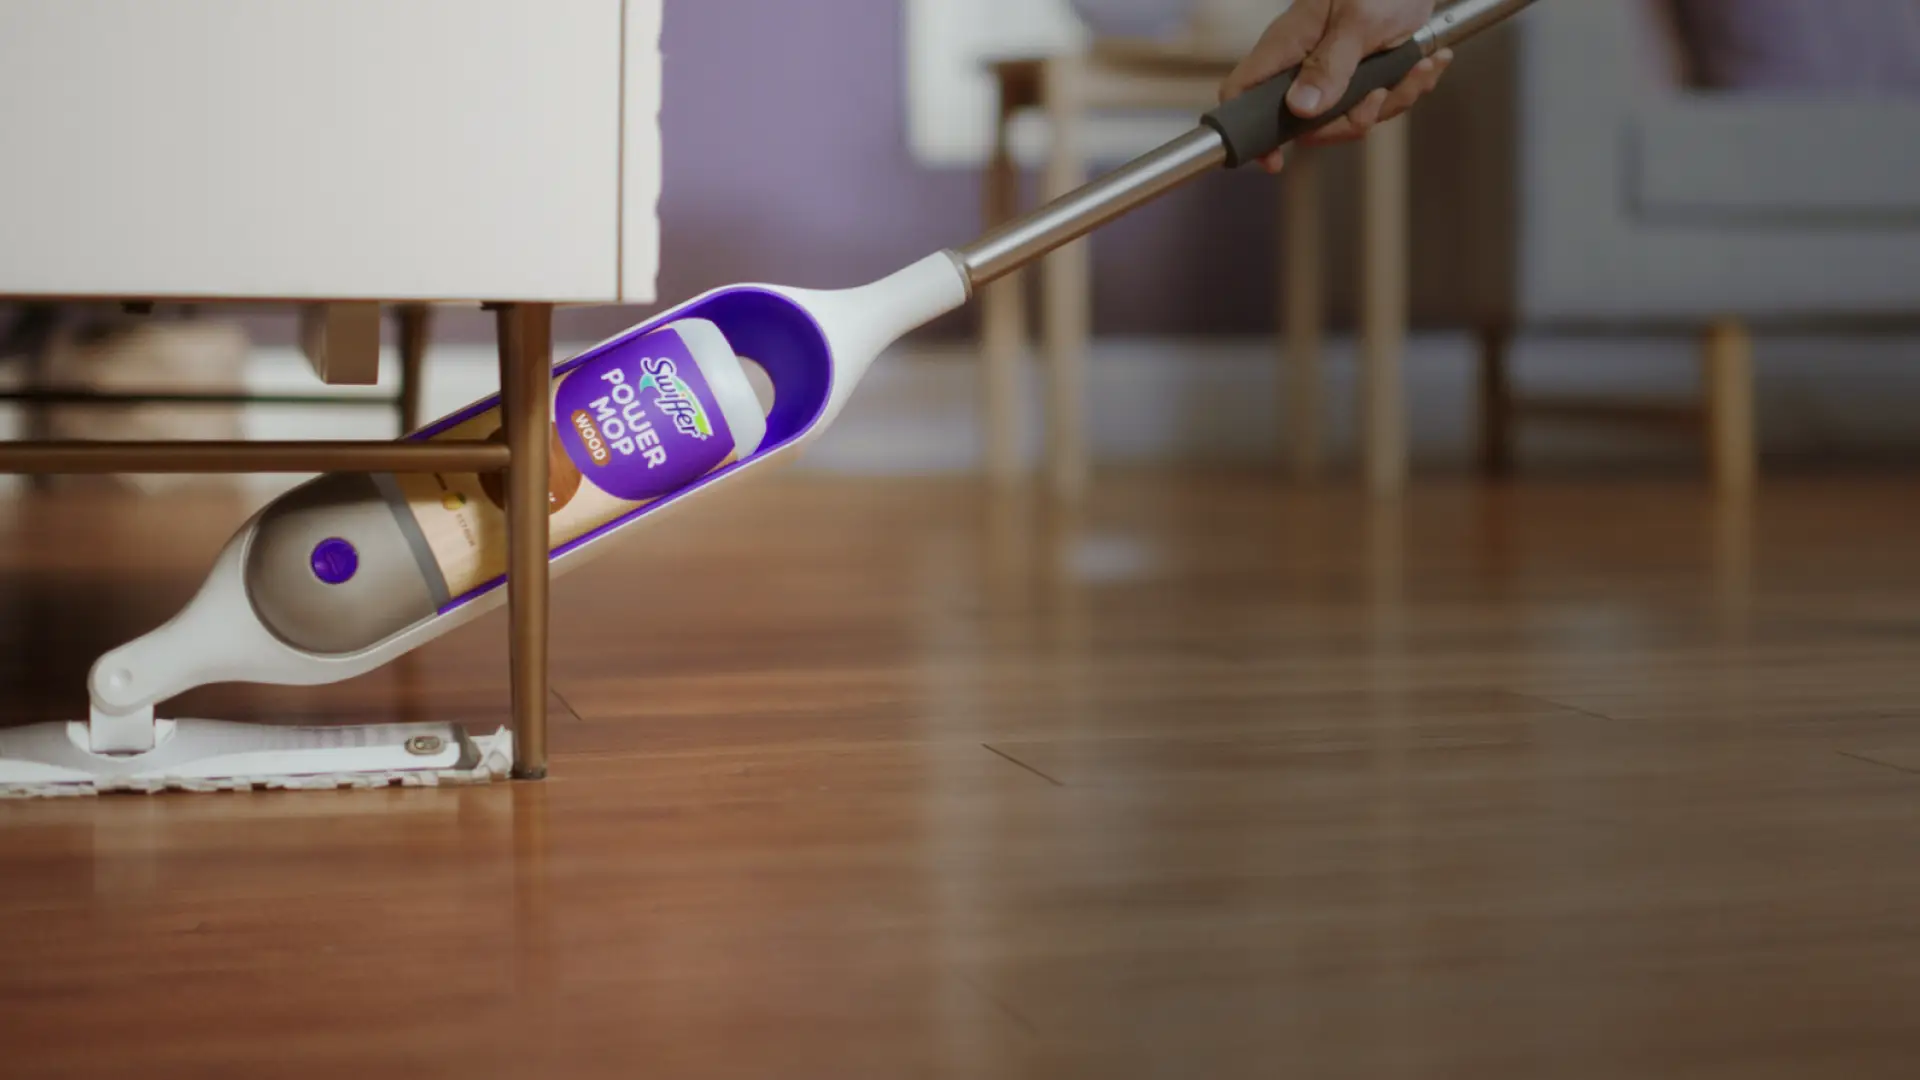 Power mop cleaning wooden floor